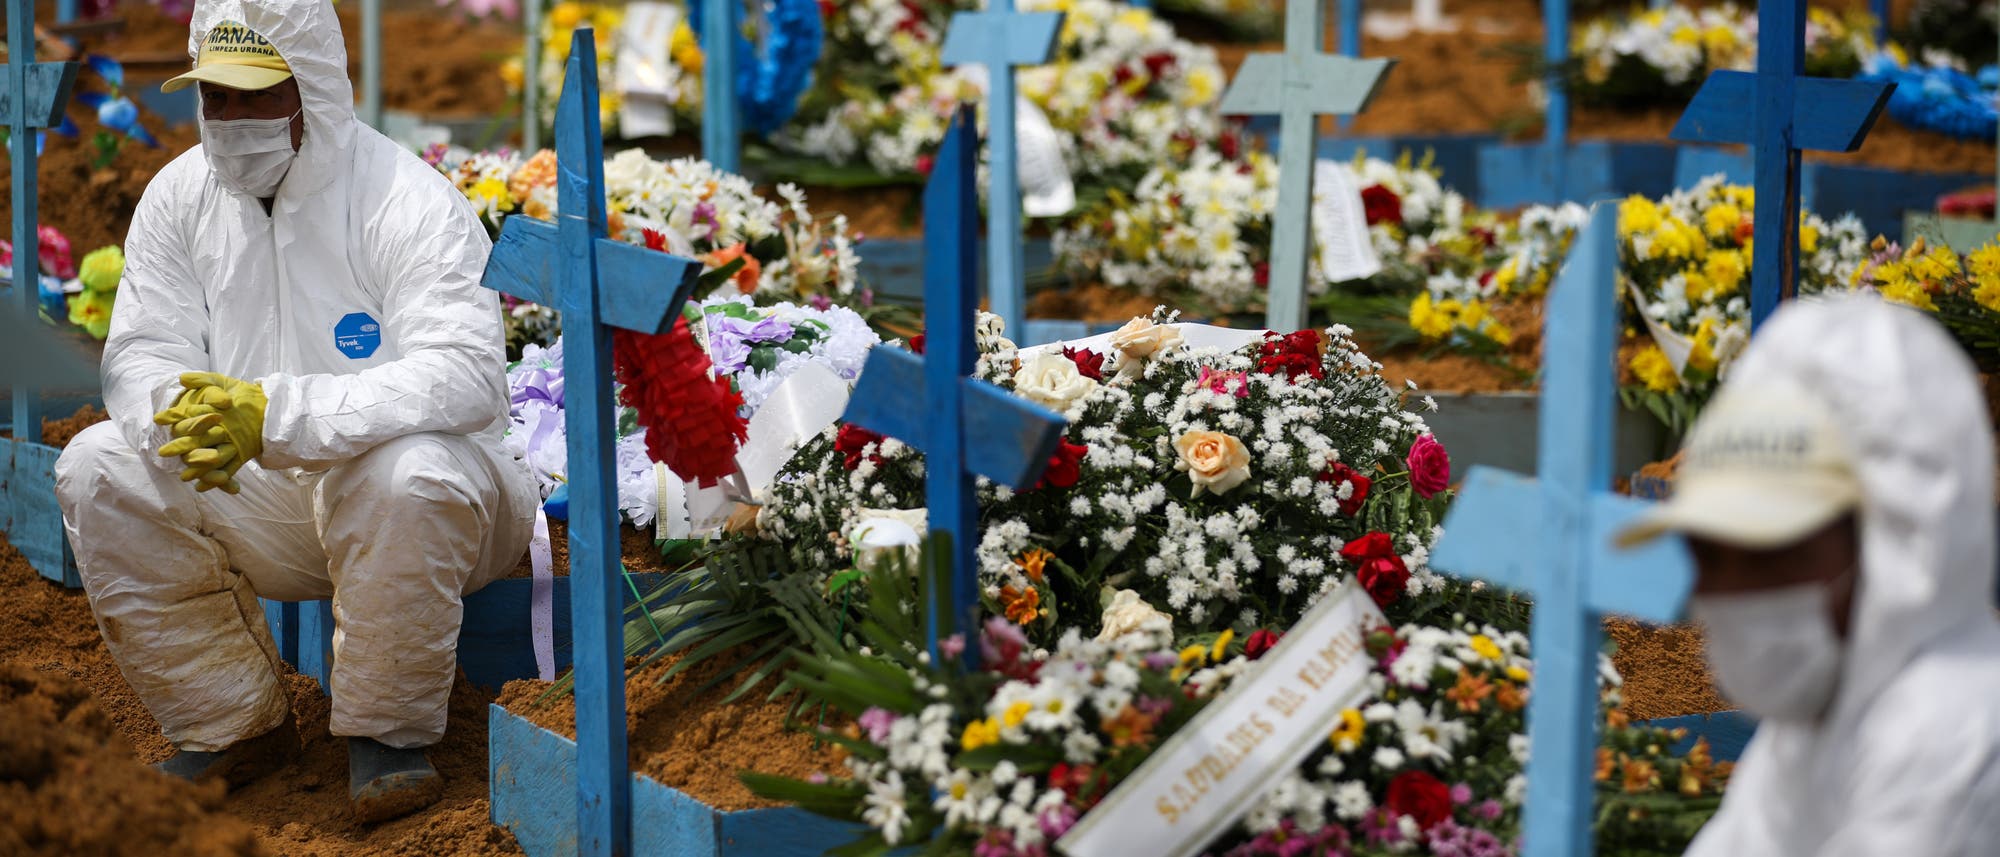 Friedhofsmitarbeiter in Schutzanzügen sitzen auf mit Blumen geschmückten Gräbern während einer Beerdigung am Friedhof Nossa Senhora Aparecida in Manaus.